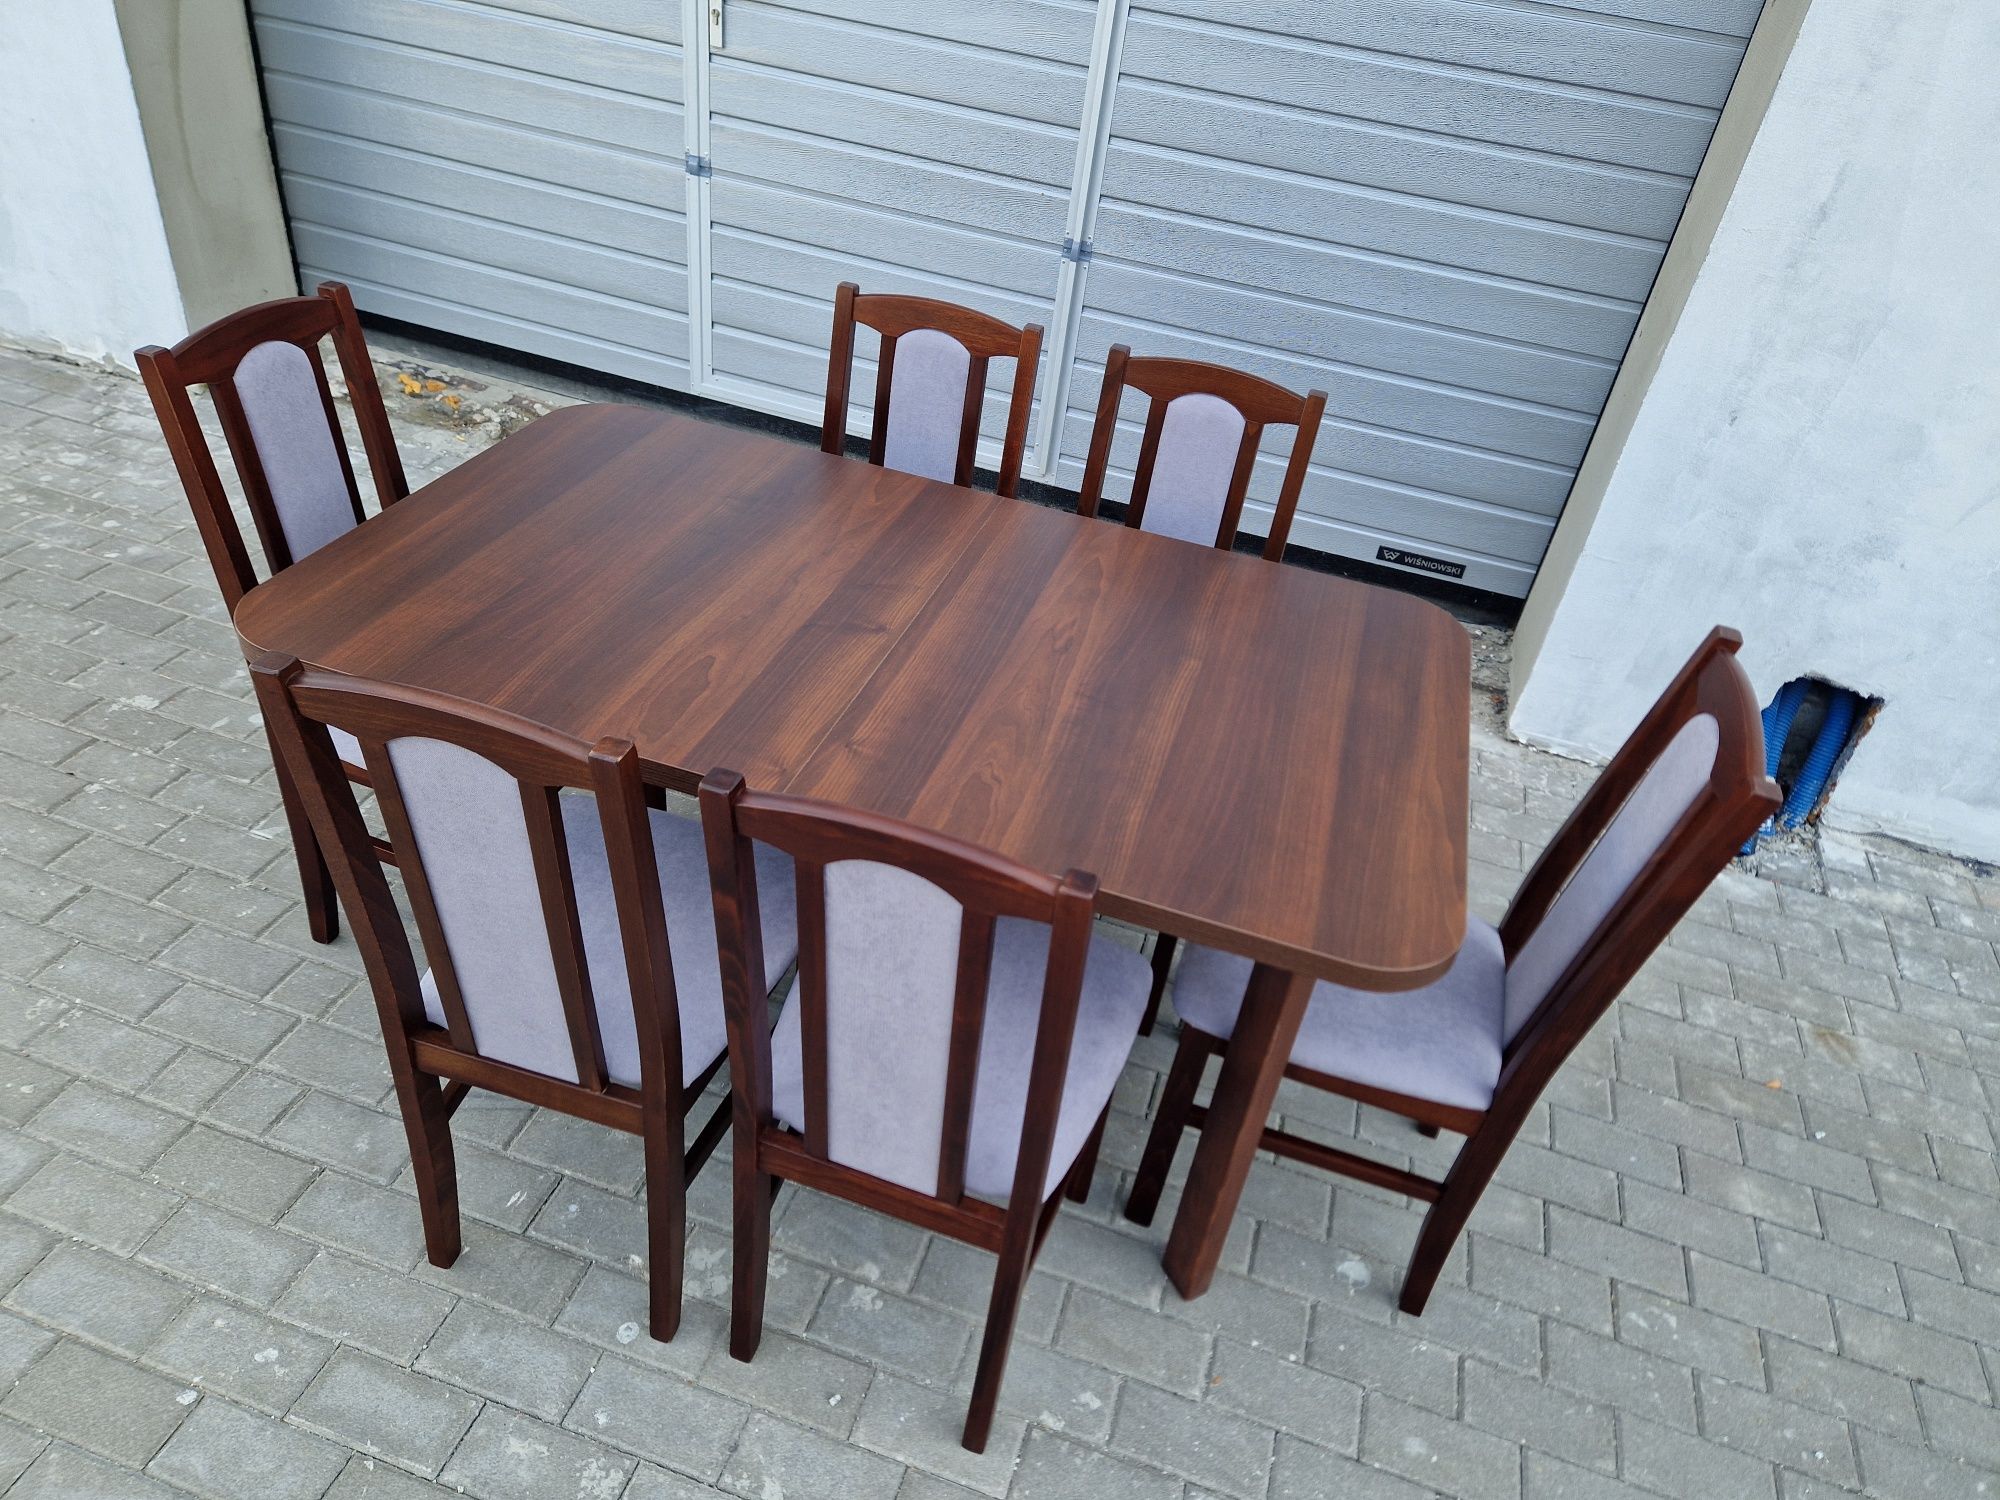 Nowe: Stół 80x140 rozkładany na 180 cm + 6 krzeseł, orzech + szary